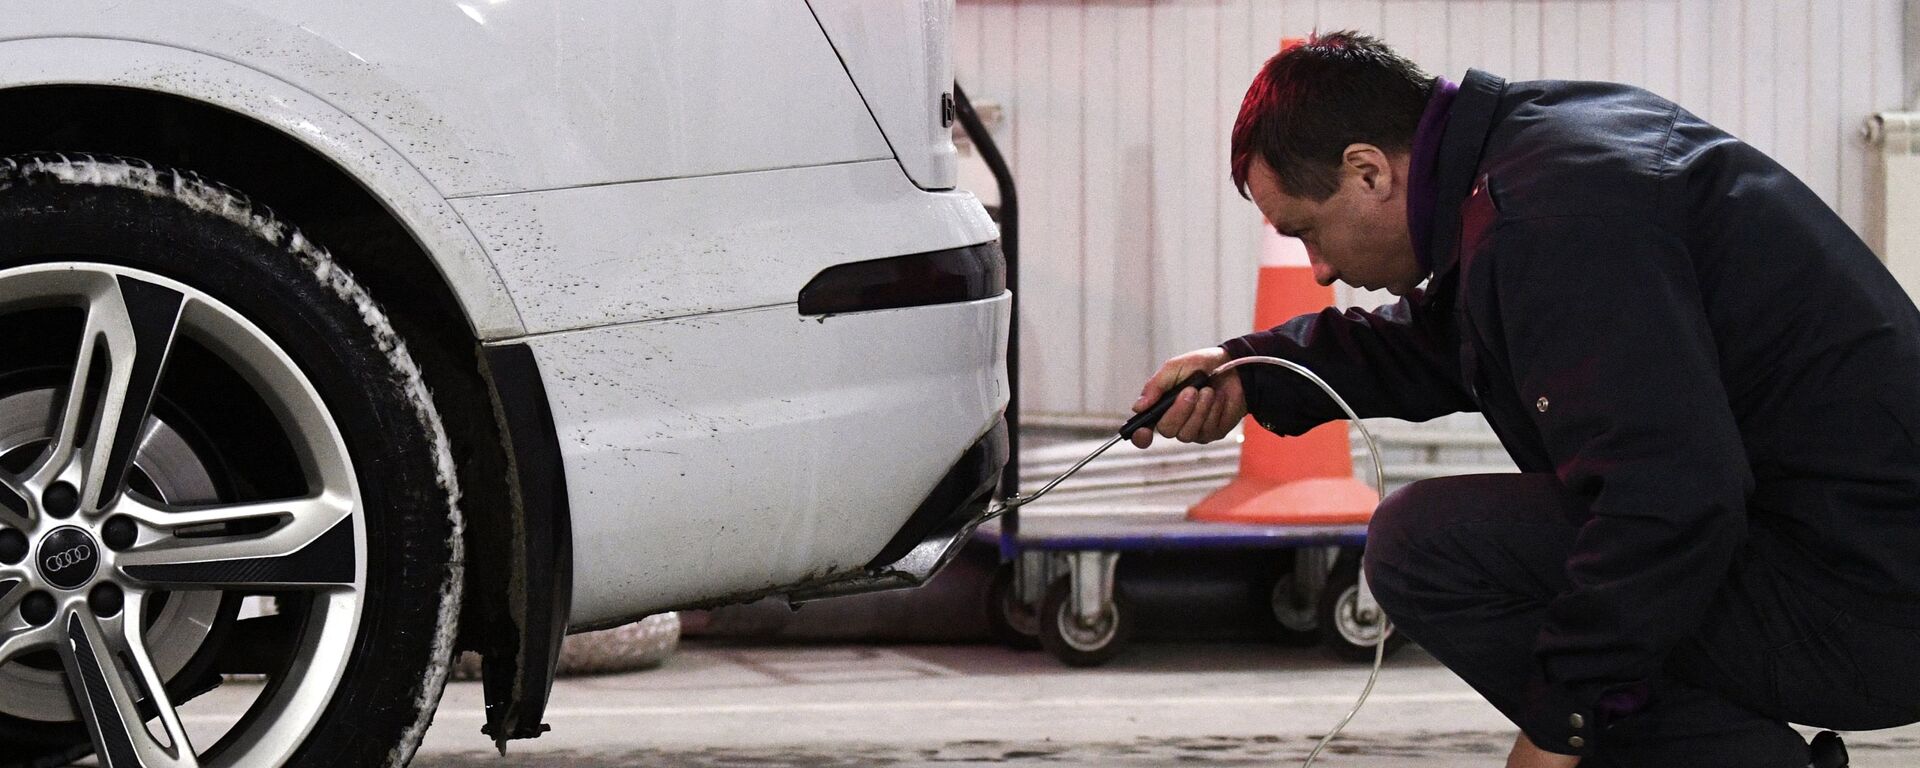 Технический эксперт проводит осмотр автомобиля на СТО. Архивное фото - Sputnik Кыргызстан, 1920, 29.05.2021